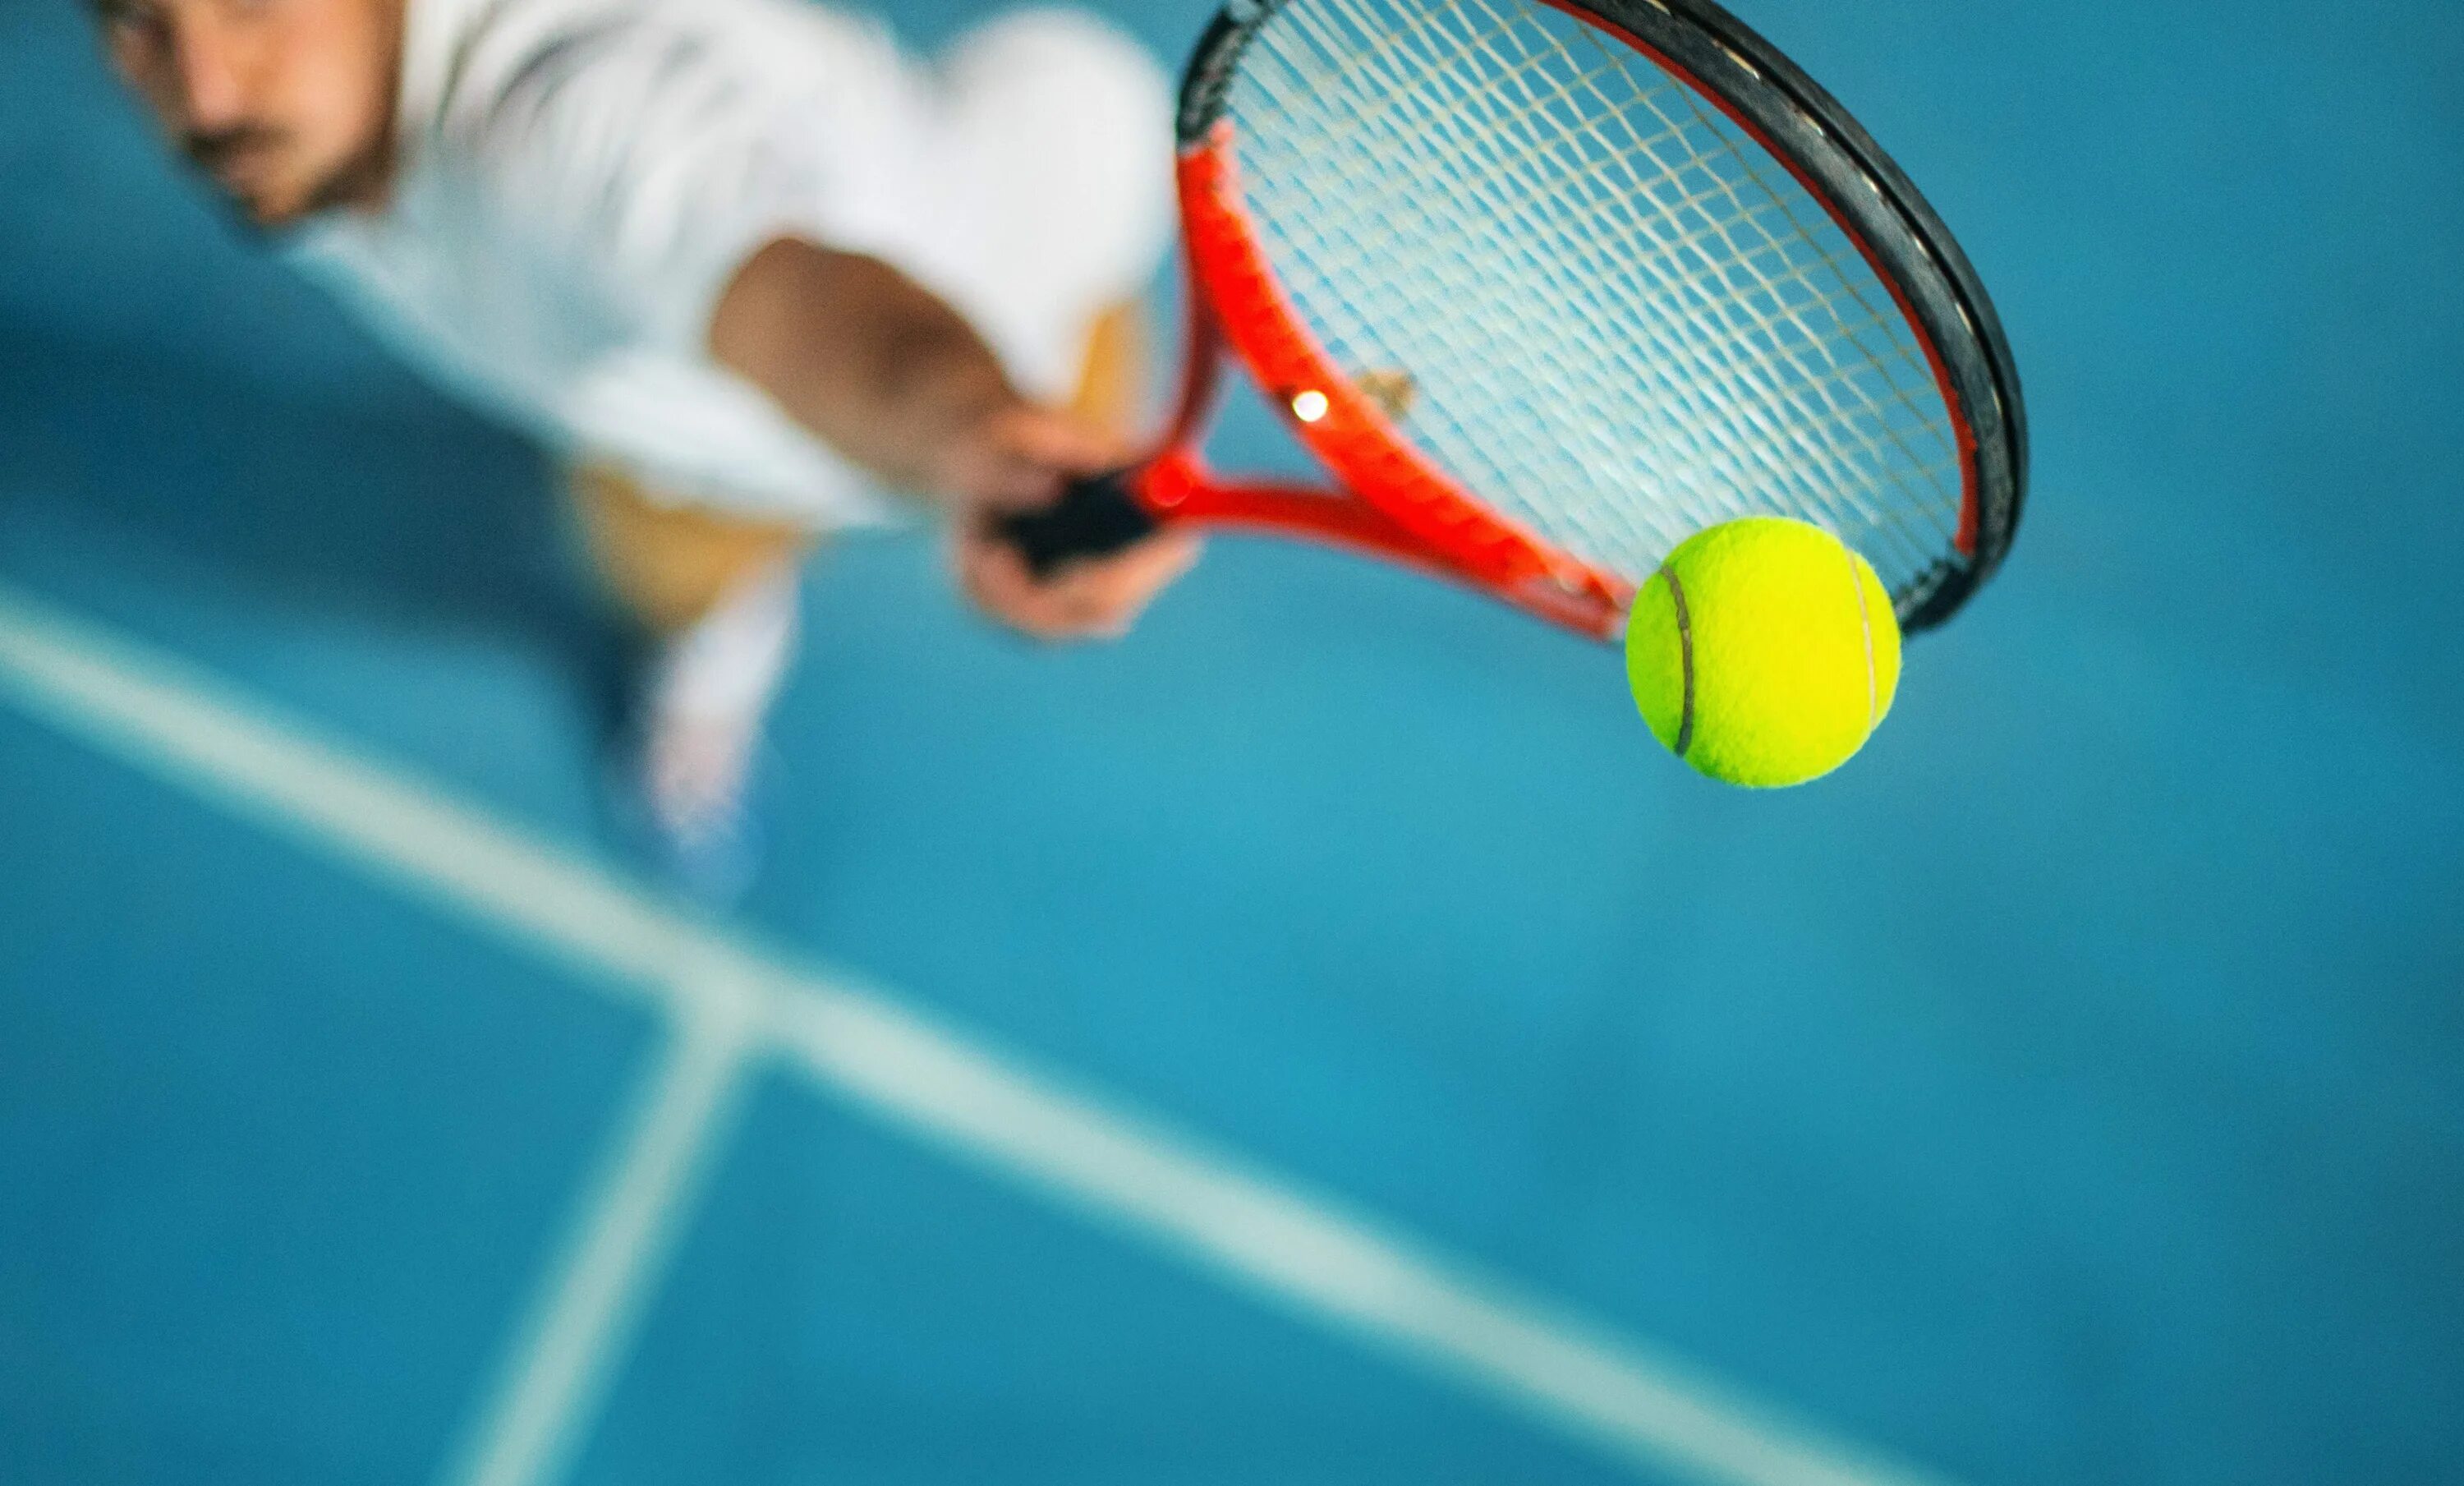 Bens sports canlı. Теннис. Большой теннис. Теннисный корт с мячом и ракеткой. Спорт большой теннис.